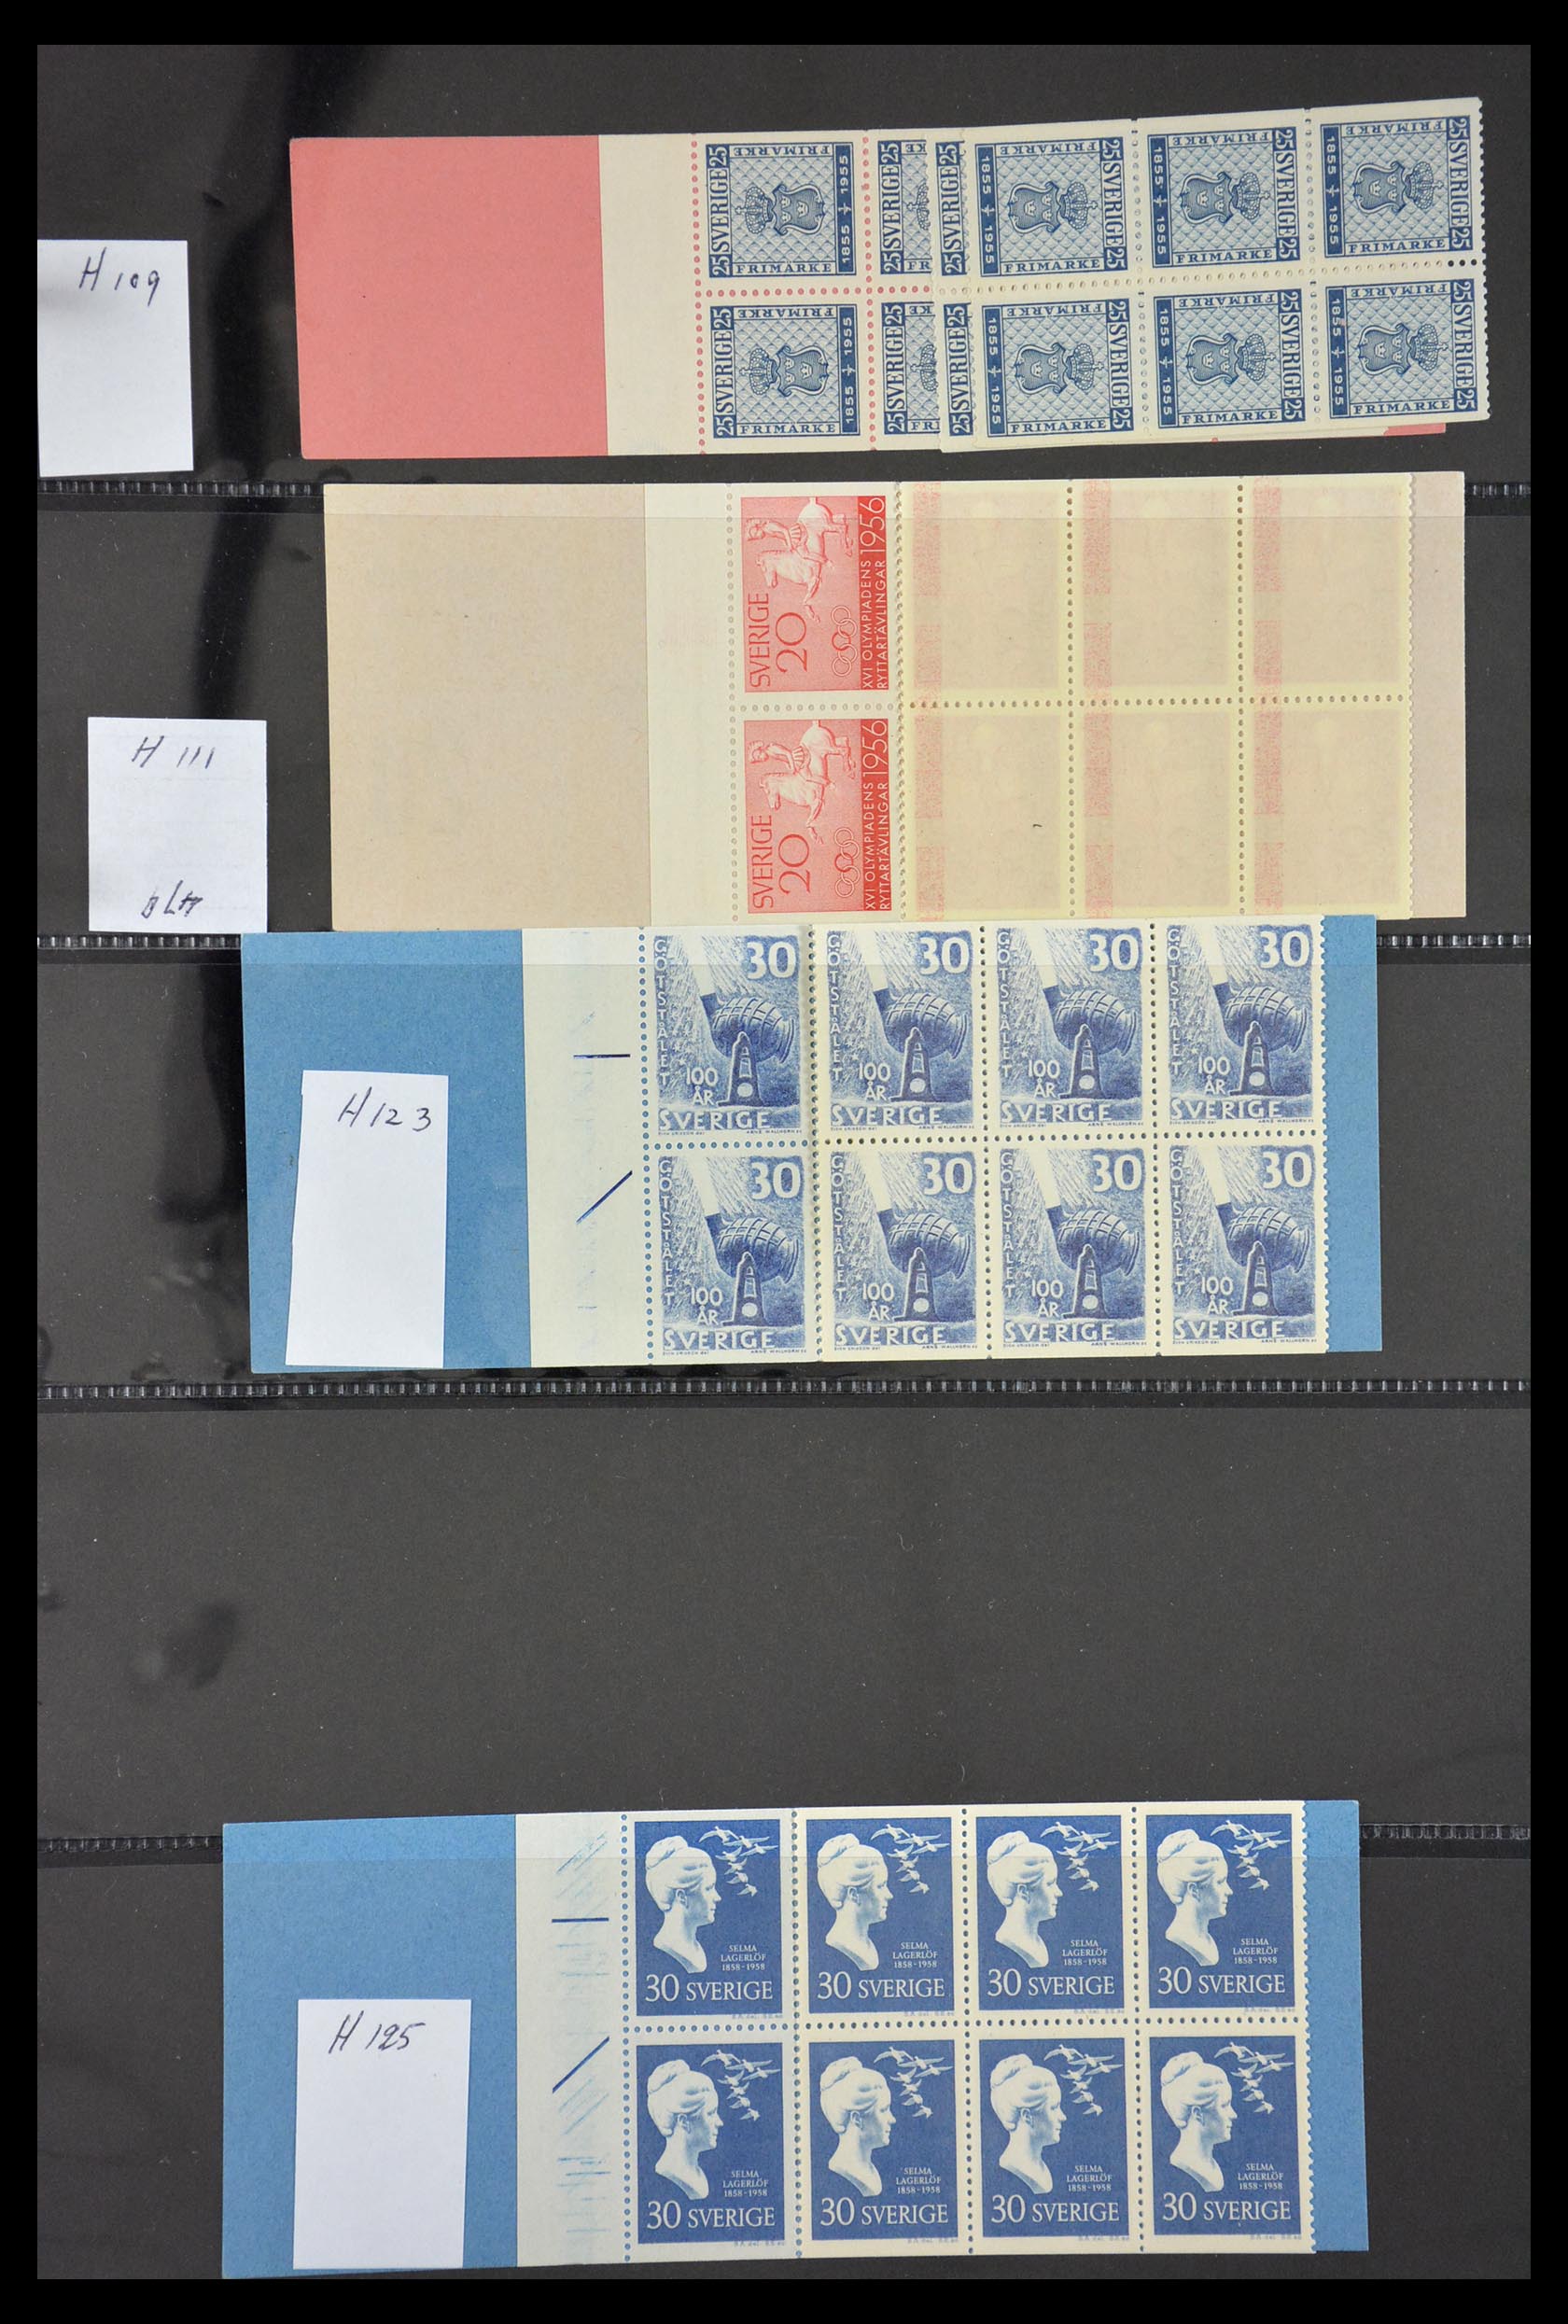 29368 026 - 29368 Sweden stamp booklets 1942-1996.